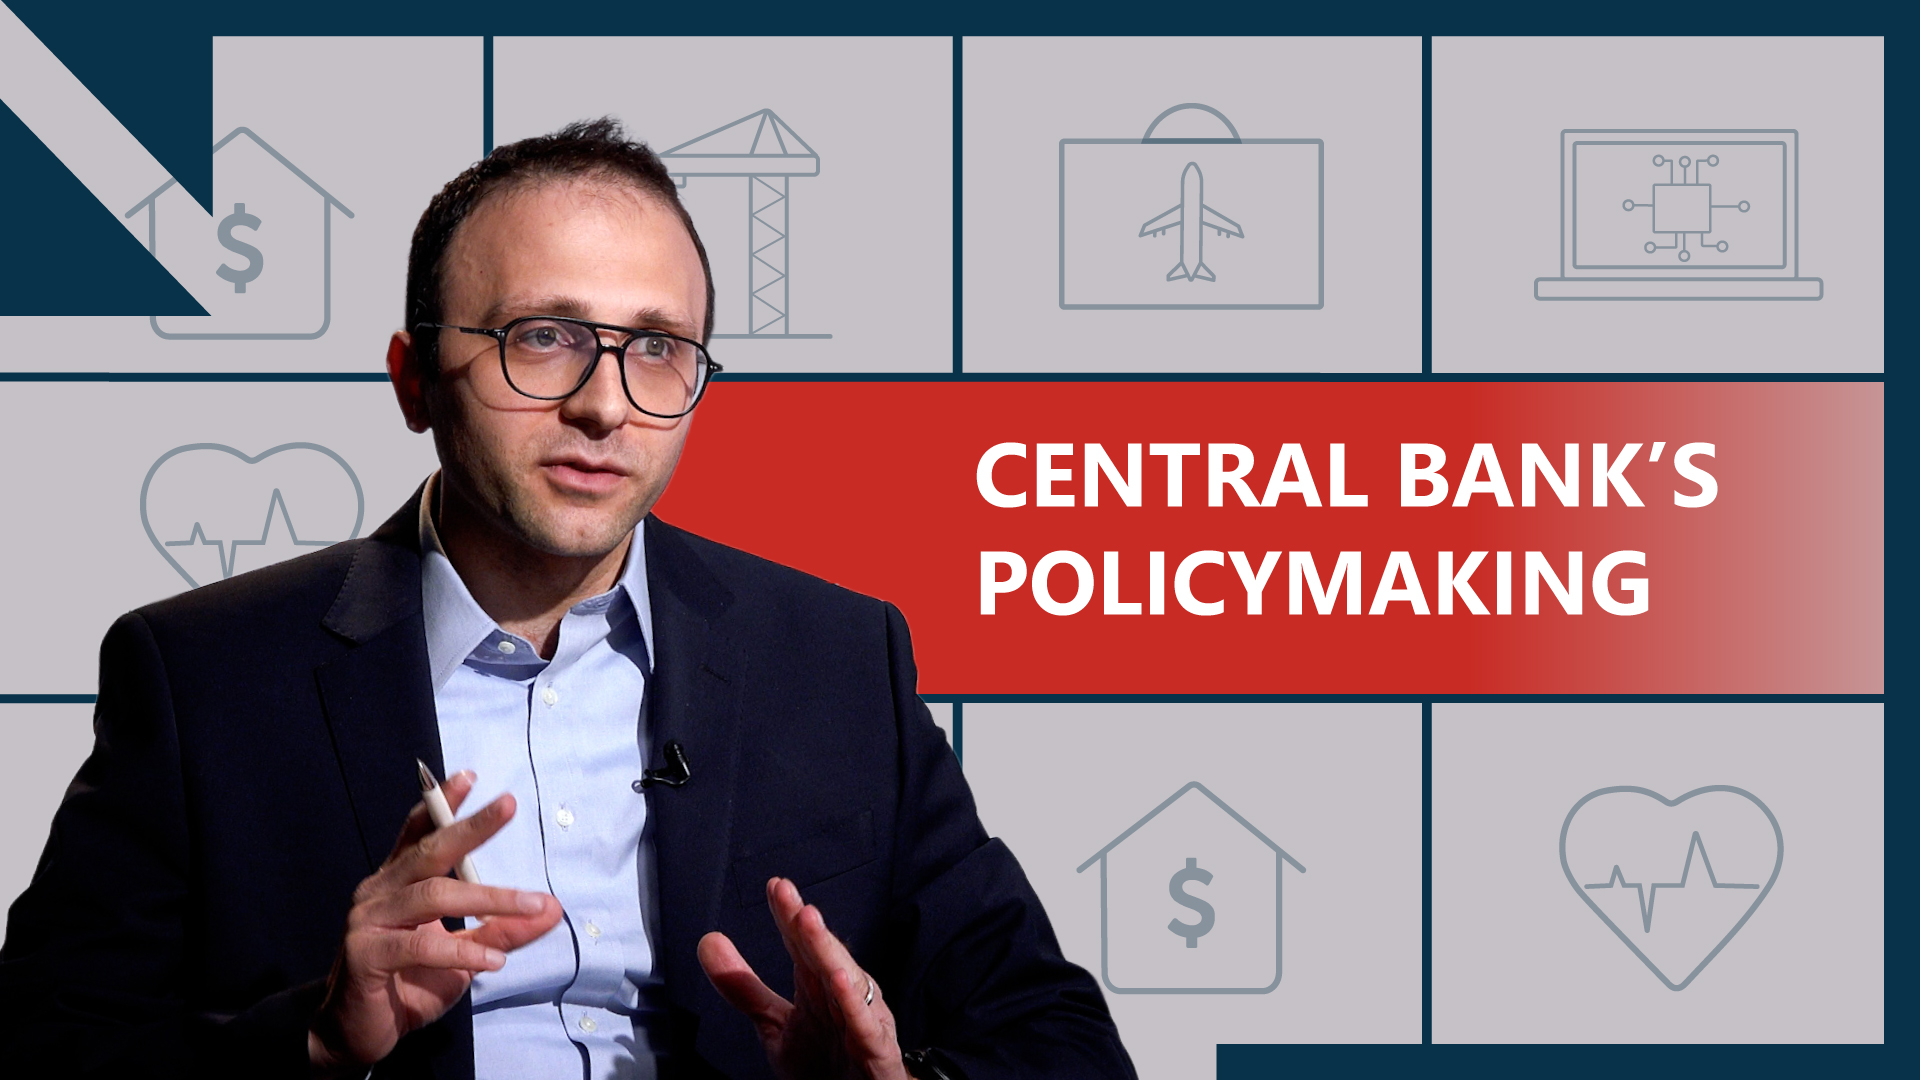 RISK MANAGEMENT FOR CENTRAL BANKS